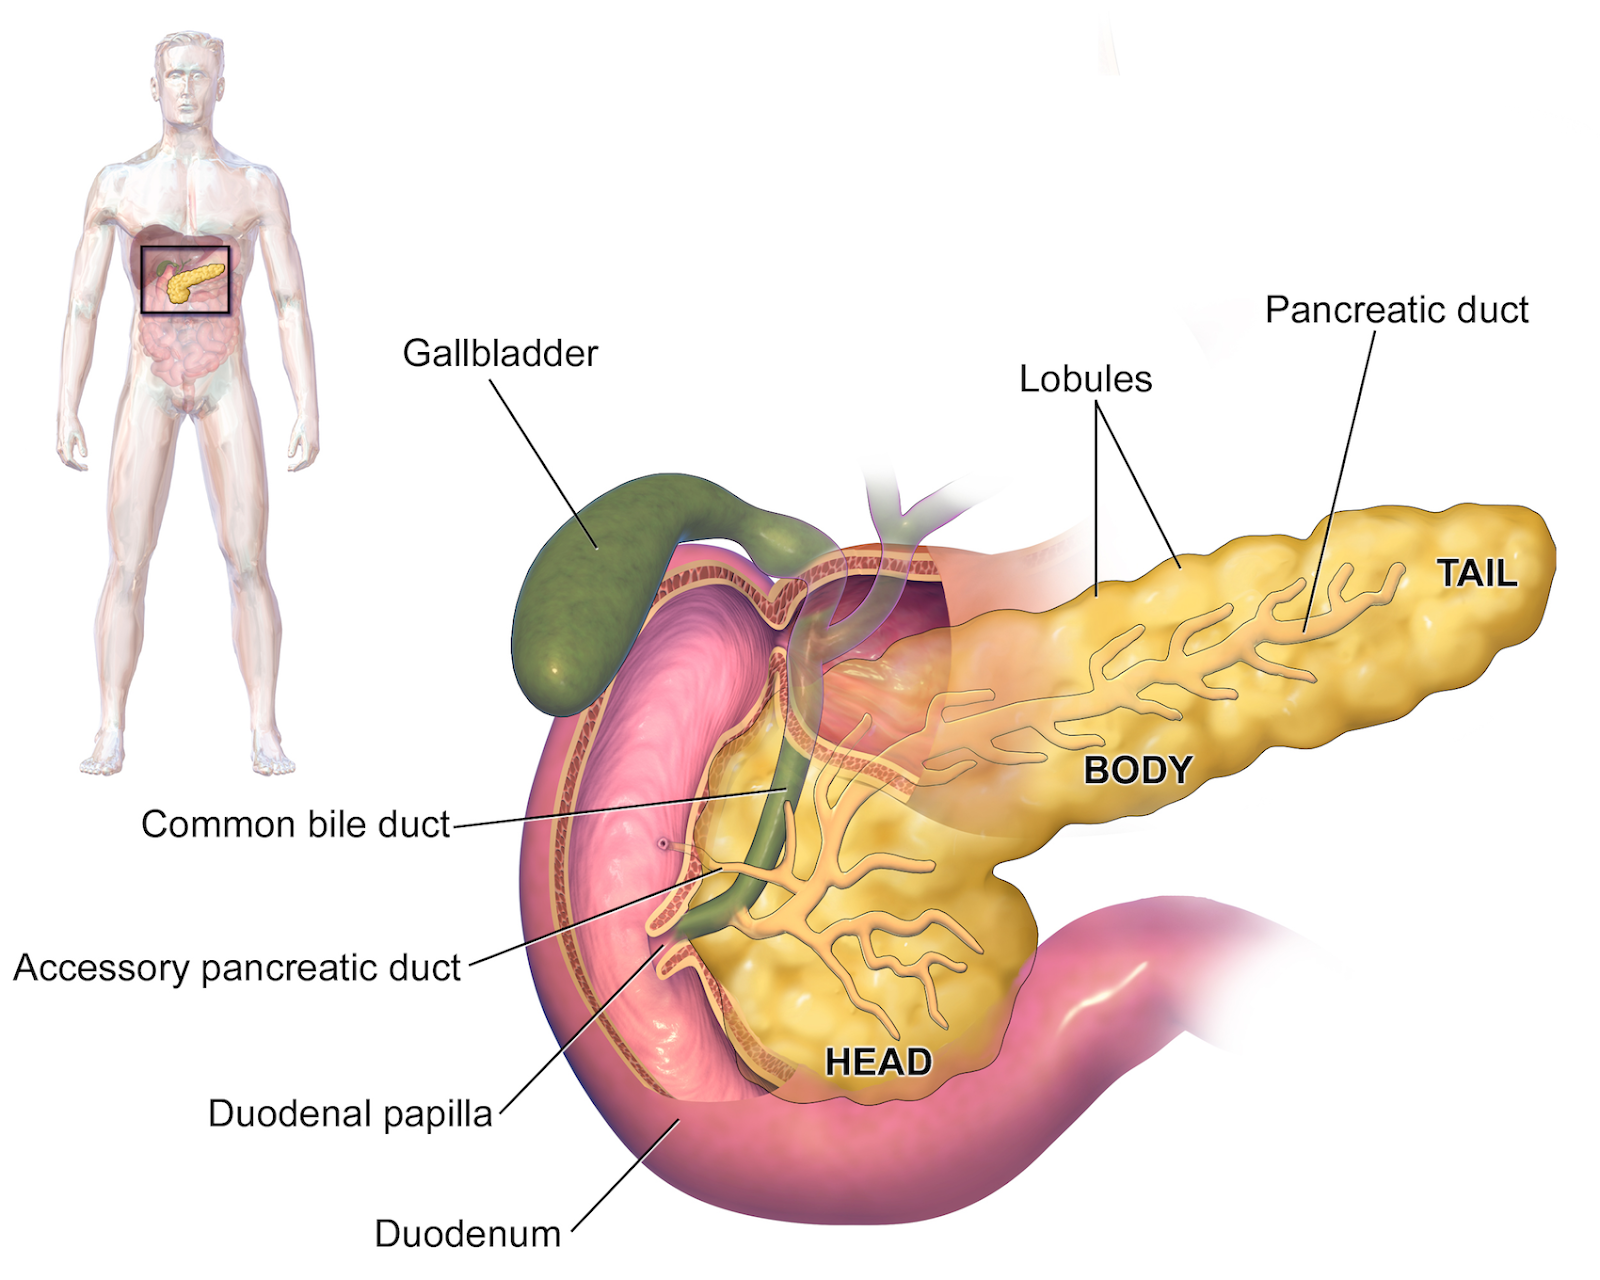 Origen emocional del cancer de pancreas